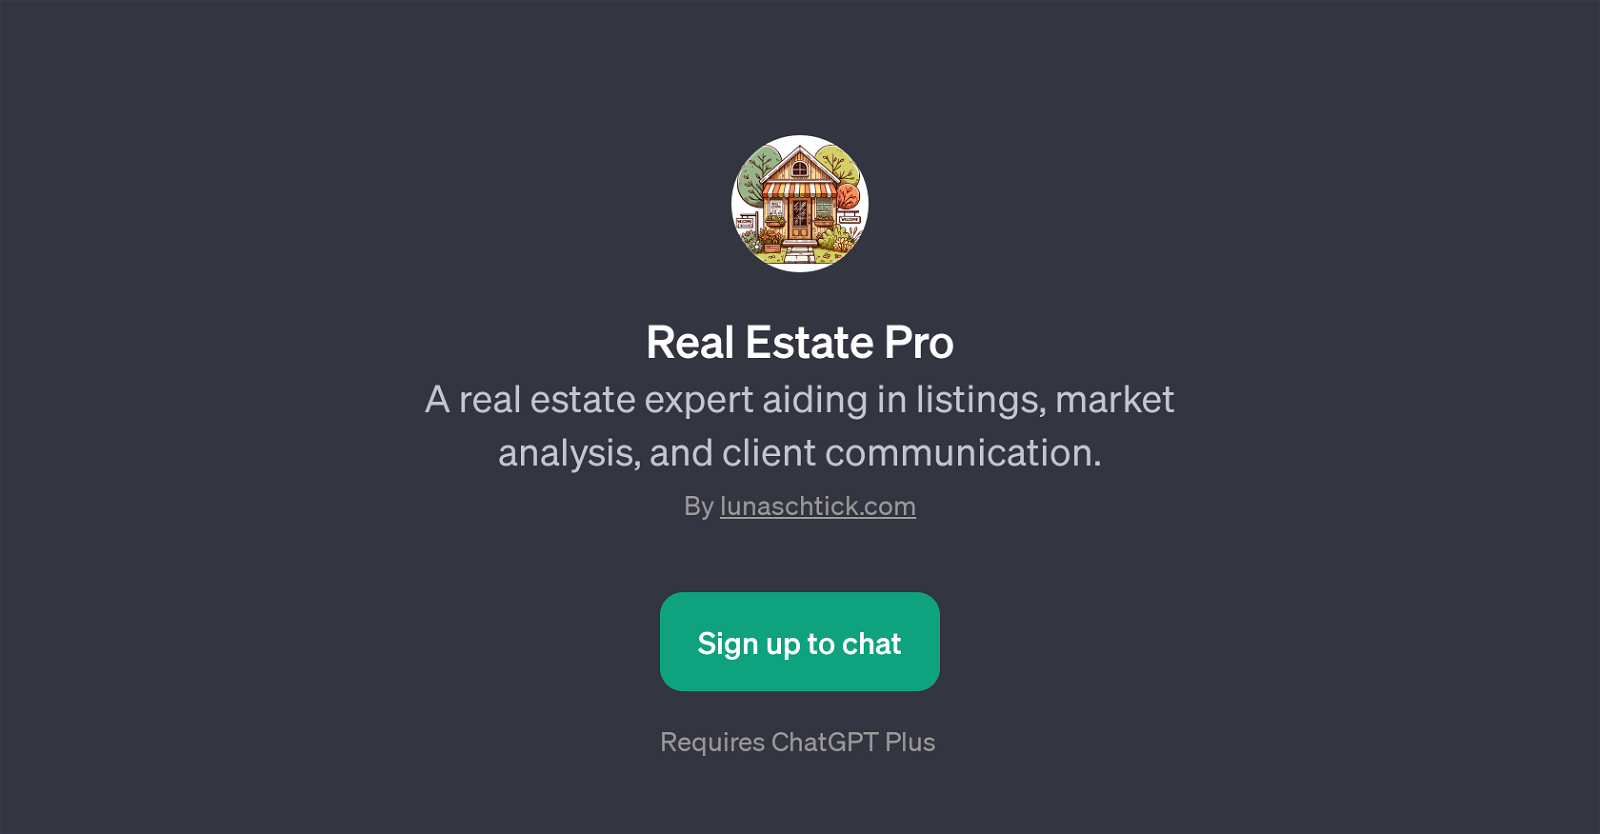 Real Estate Pro website